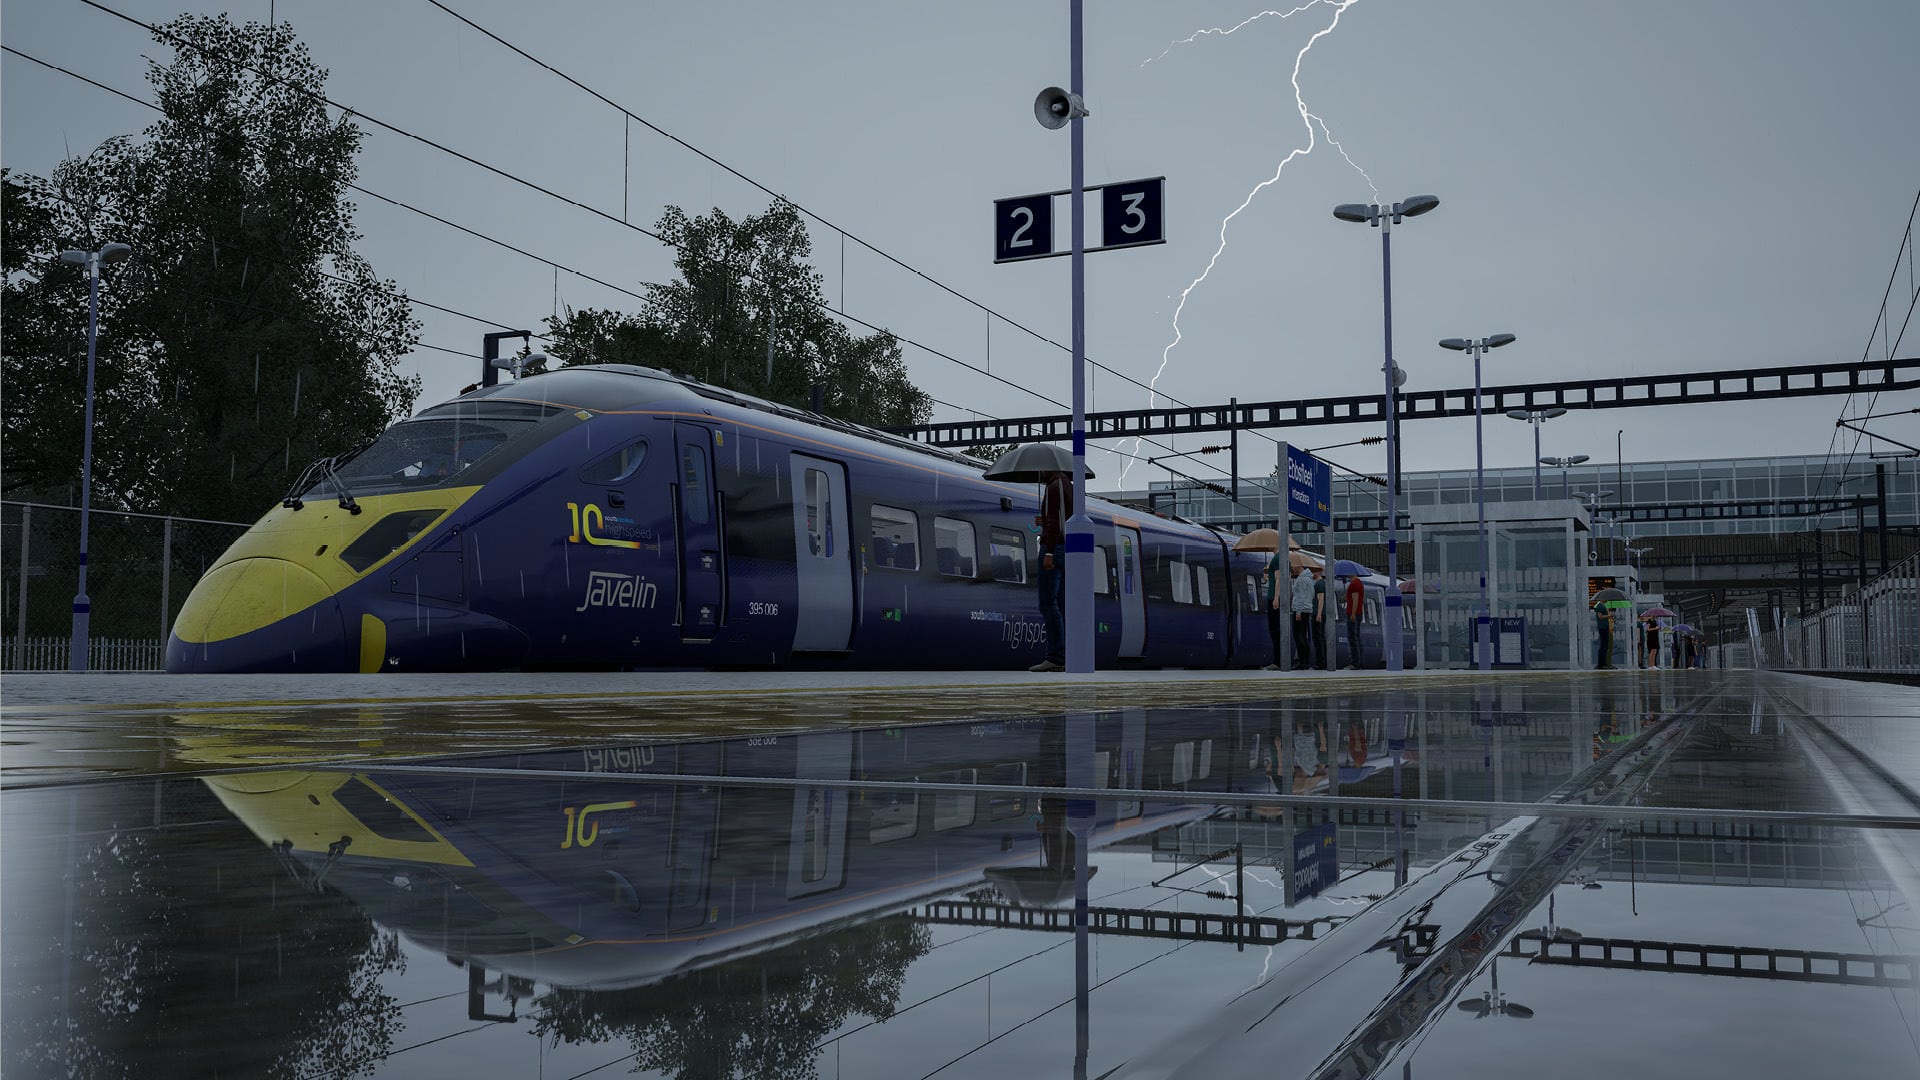 Train Sim World 3 – The Sequel is nu beschikbaar voor pc en consoles